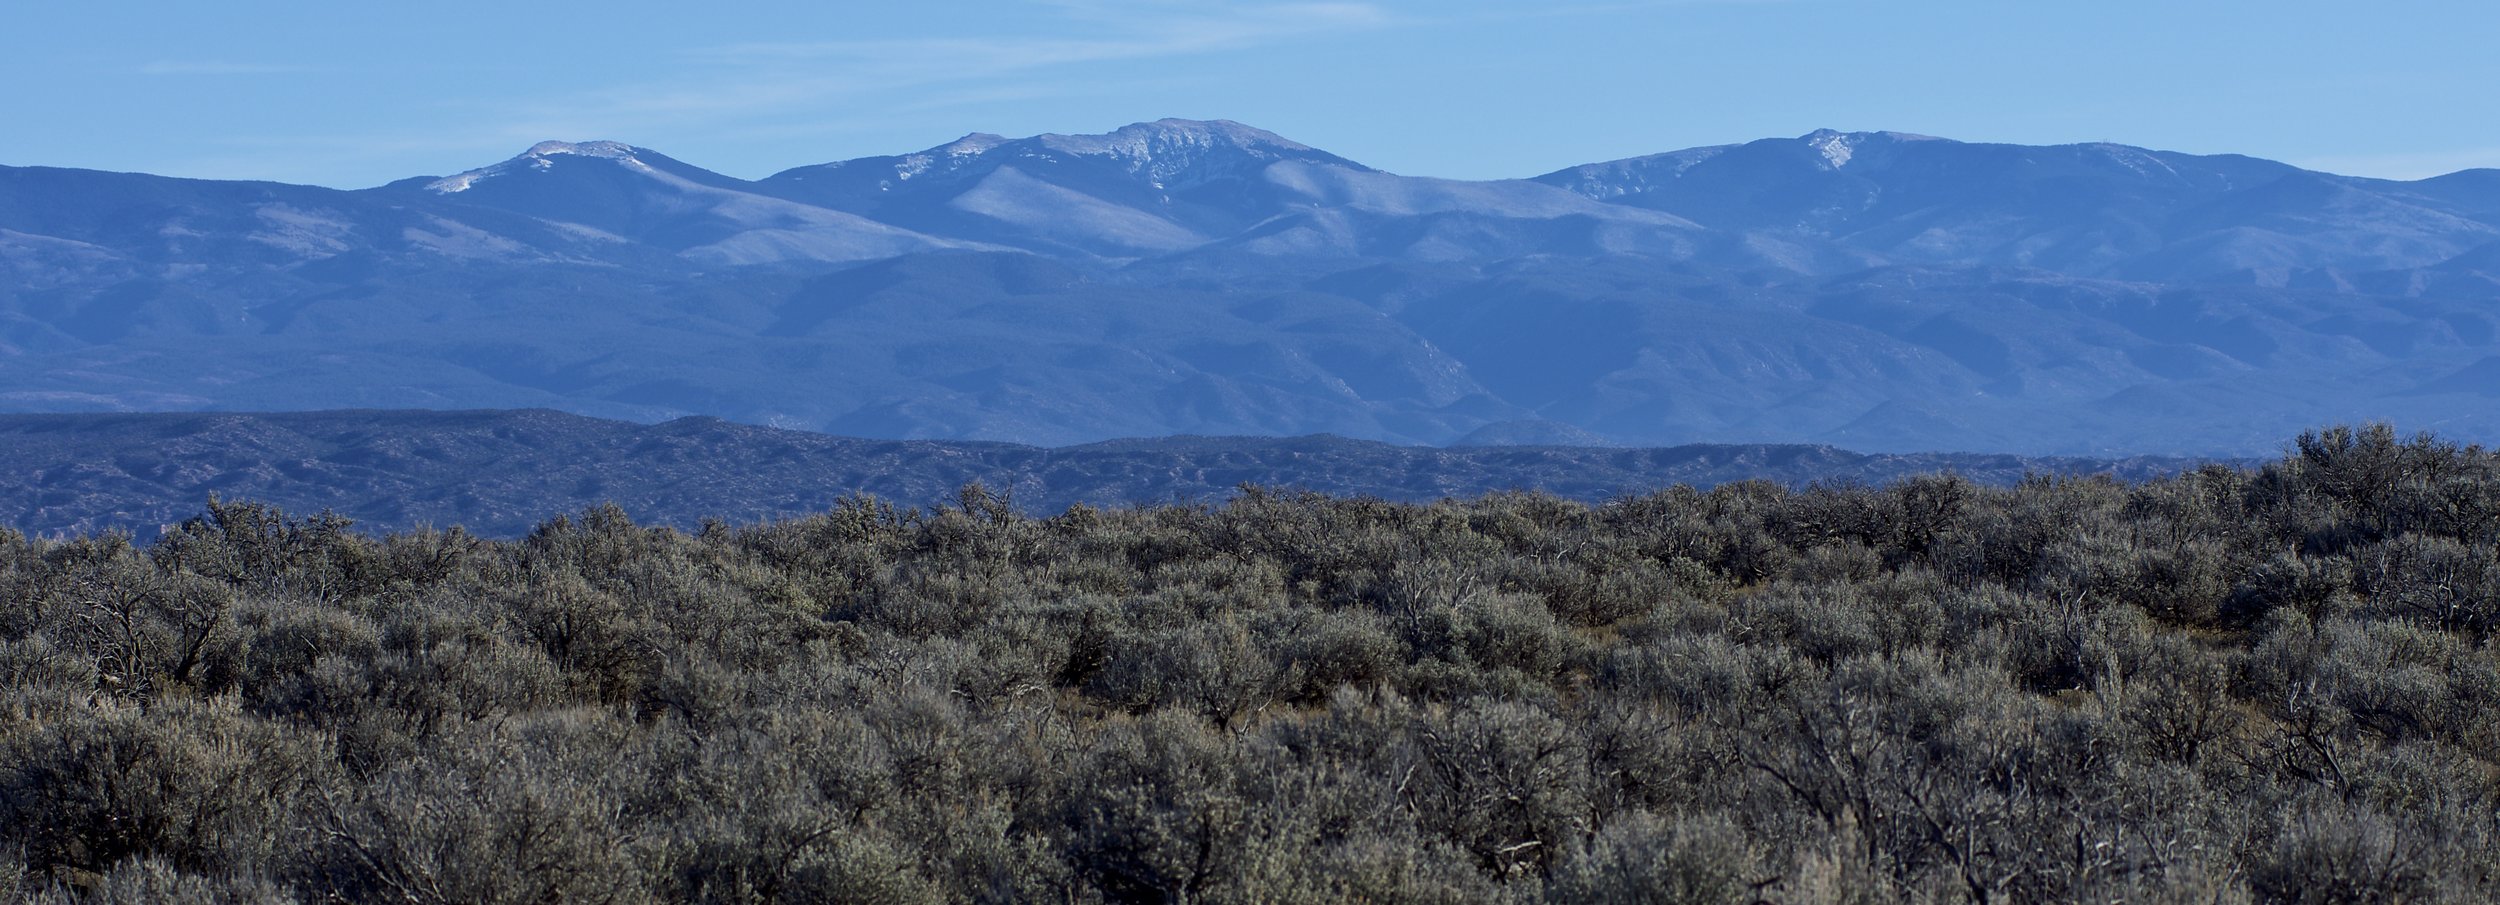 Black Mesa mountain view